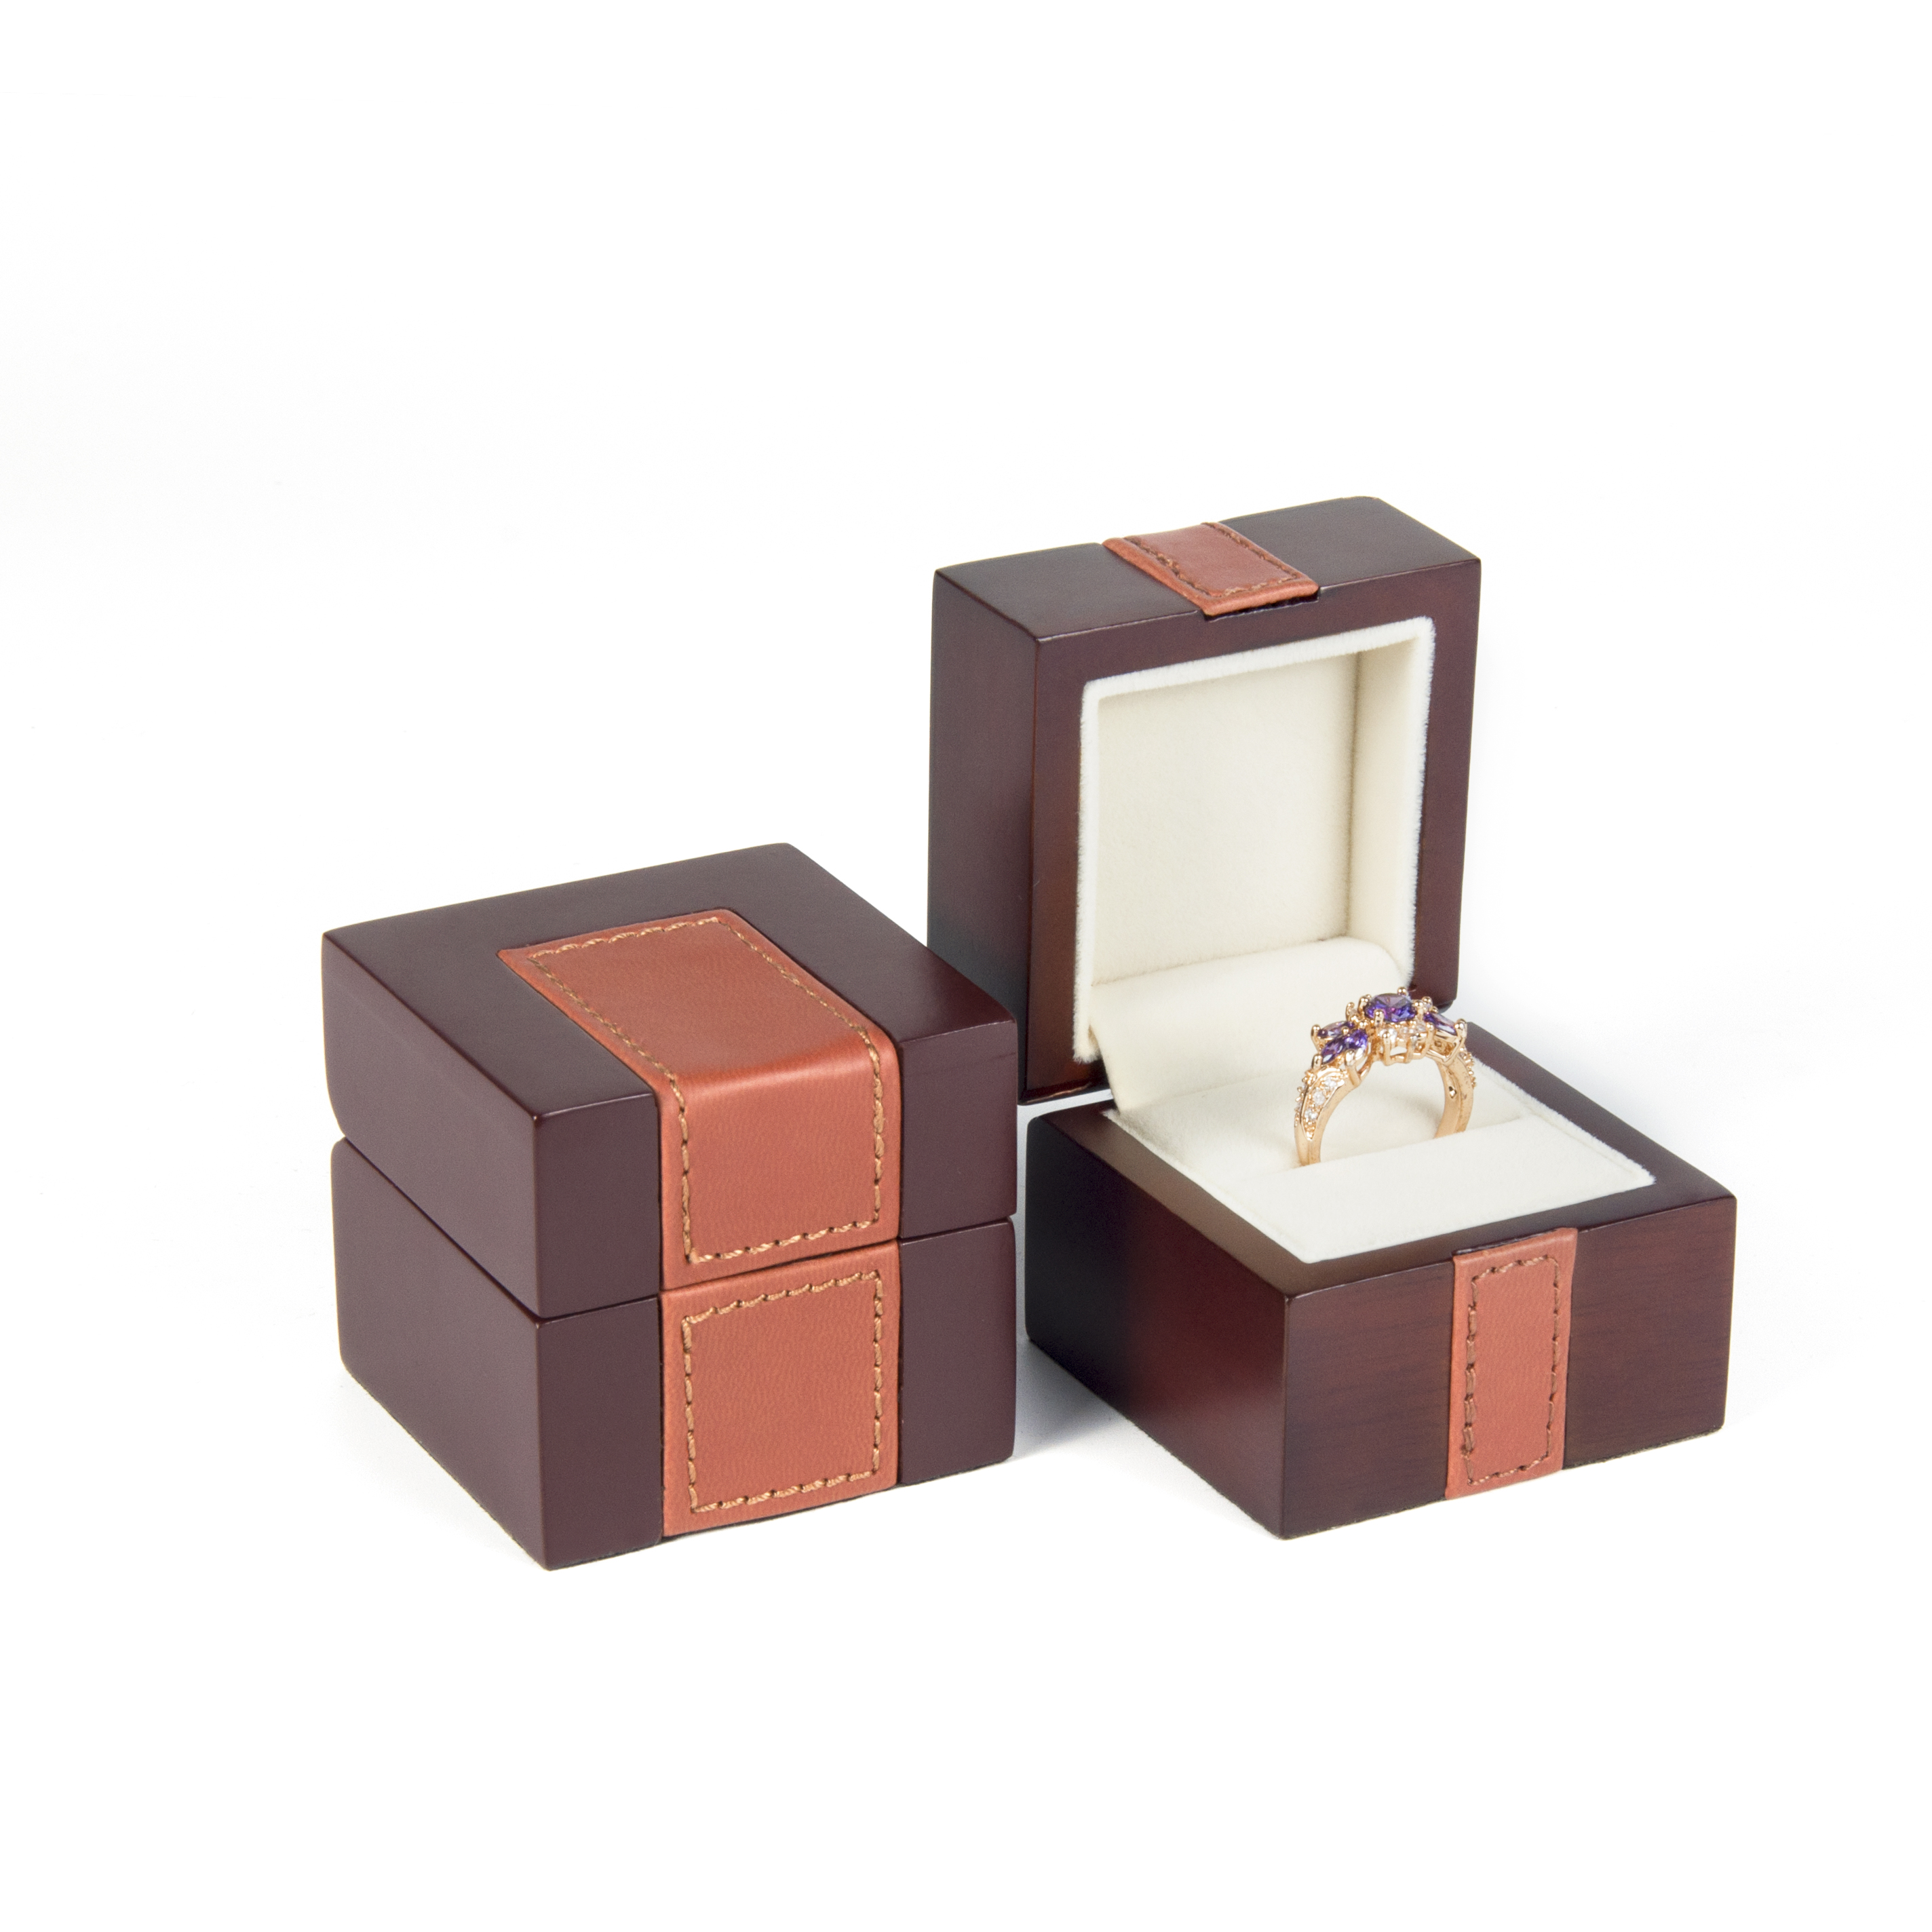 Zakázková vysoce kvalitní šperková dřevěná krabička pro nosní prsten